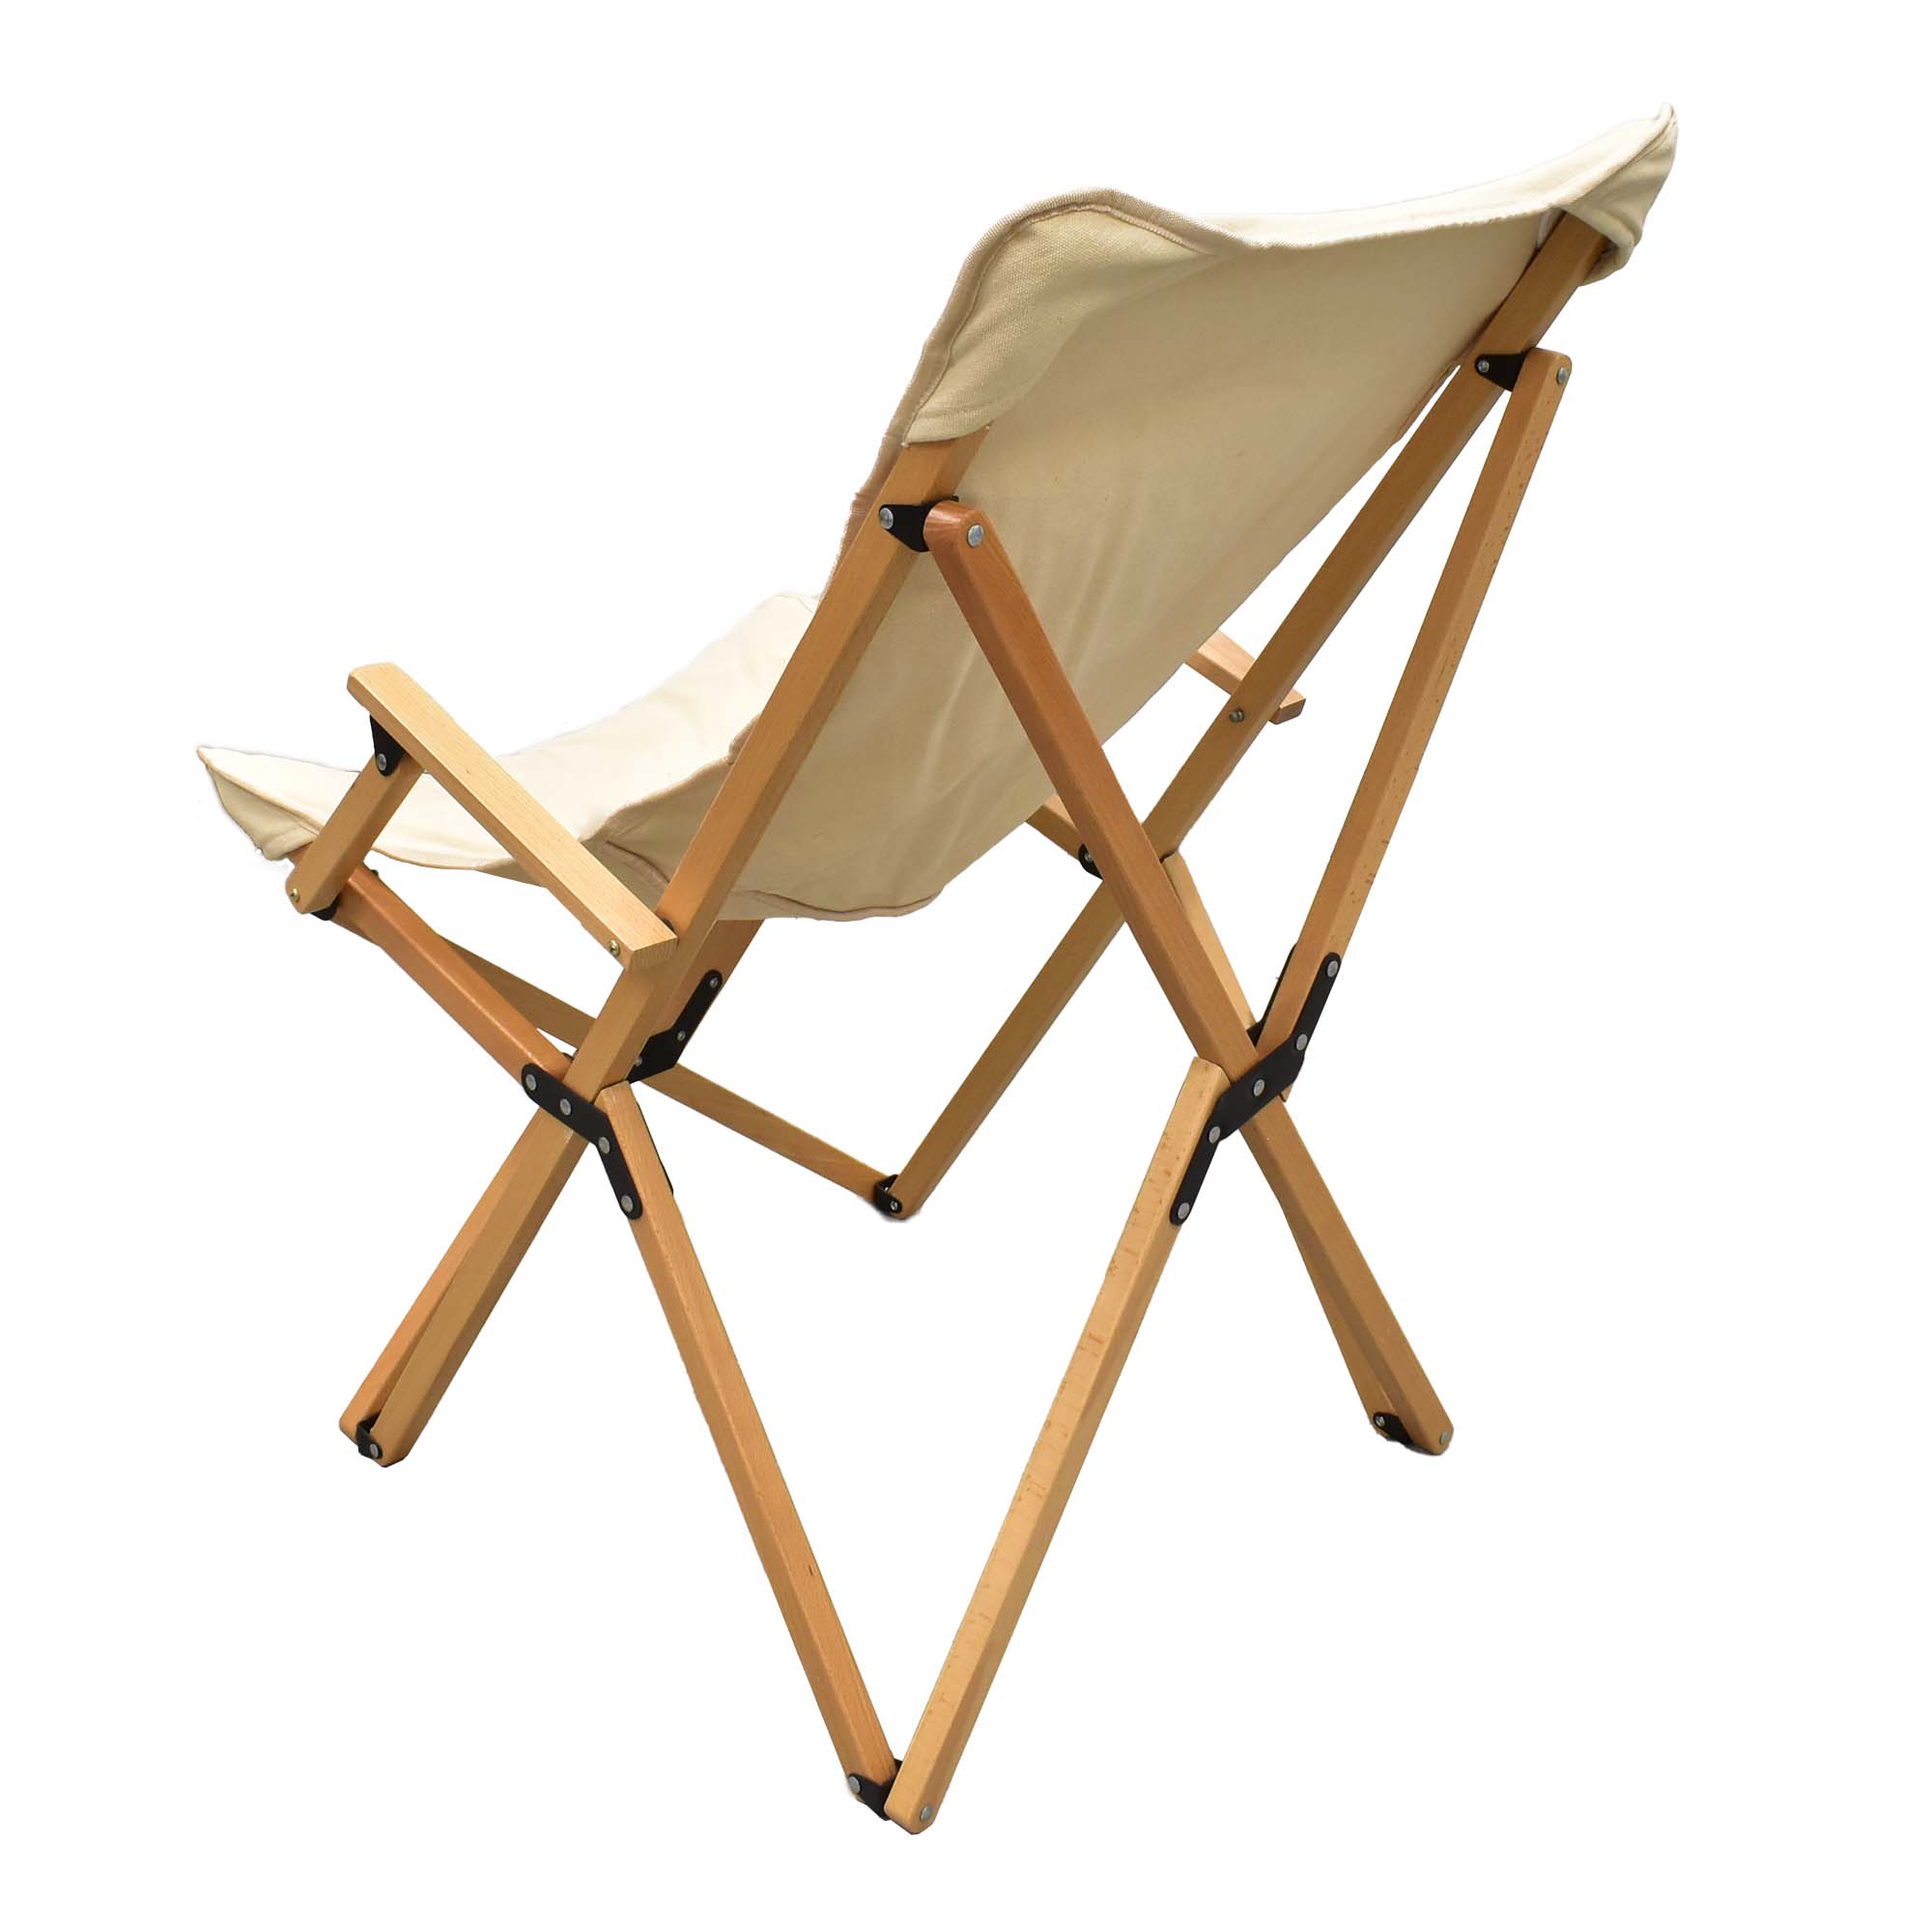 Сгъваем стол за къмпинг от дърво. Ретро стил с здраве текстил. Wooden folding chair for camping. boho style. Стил Бохо